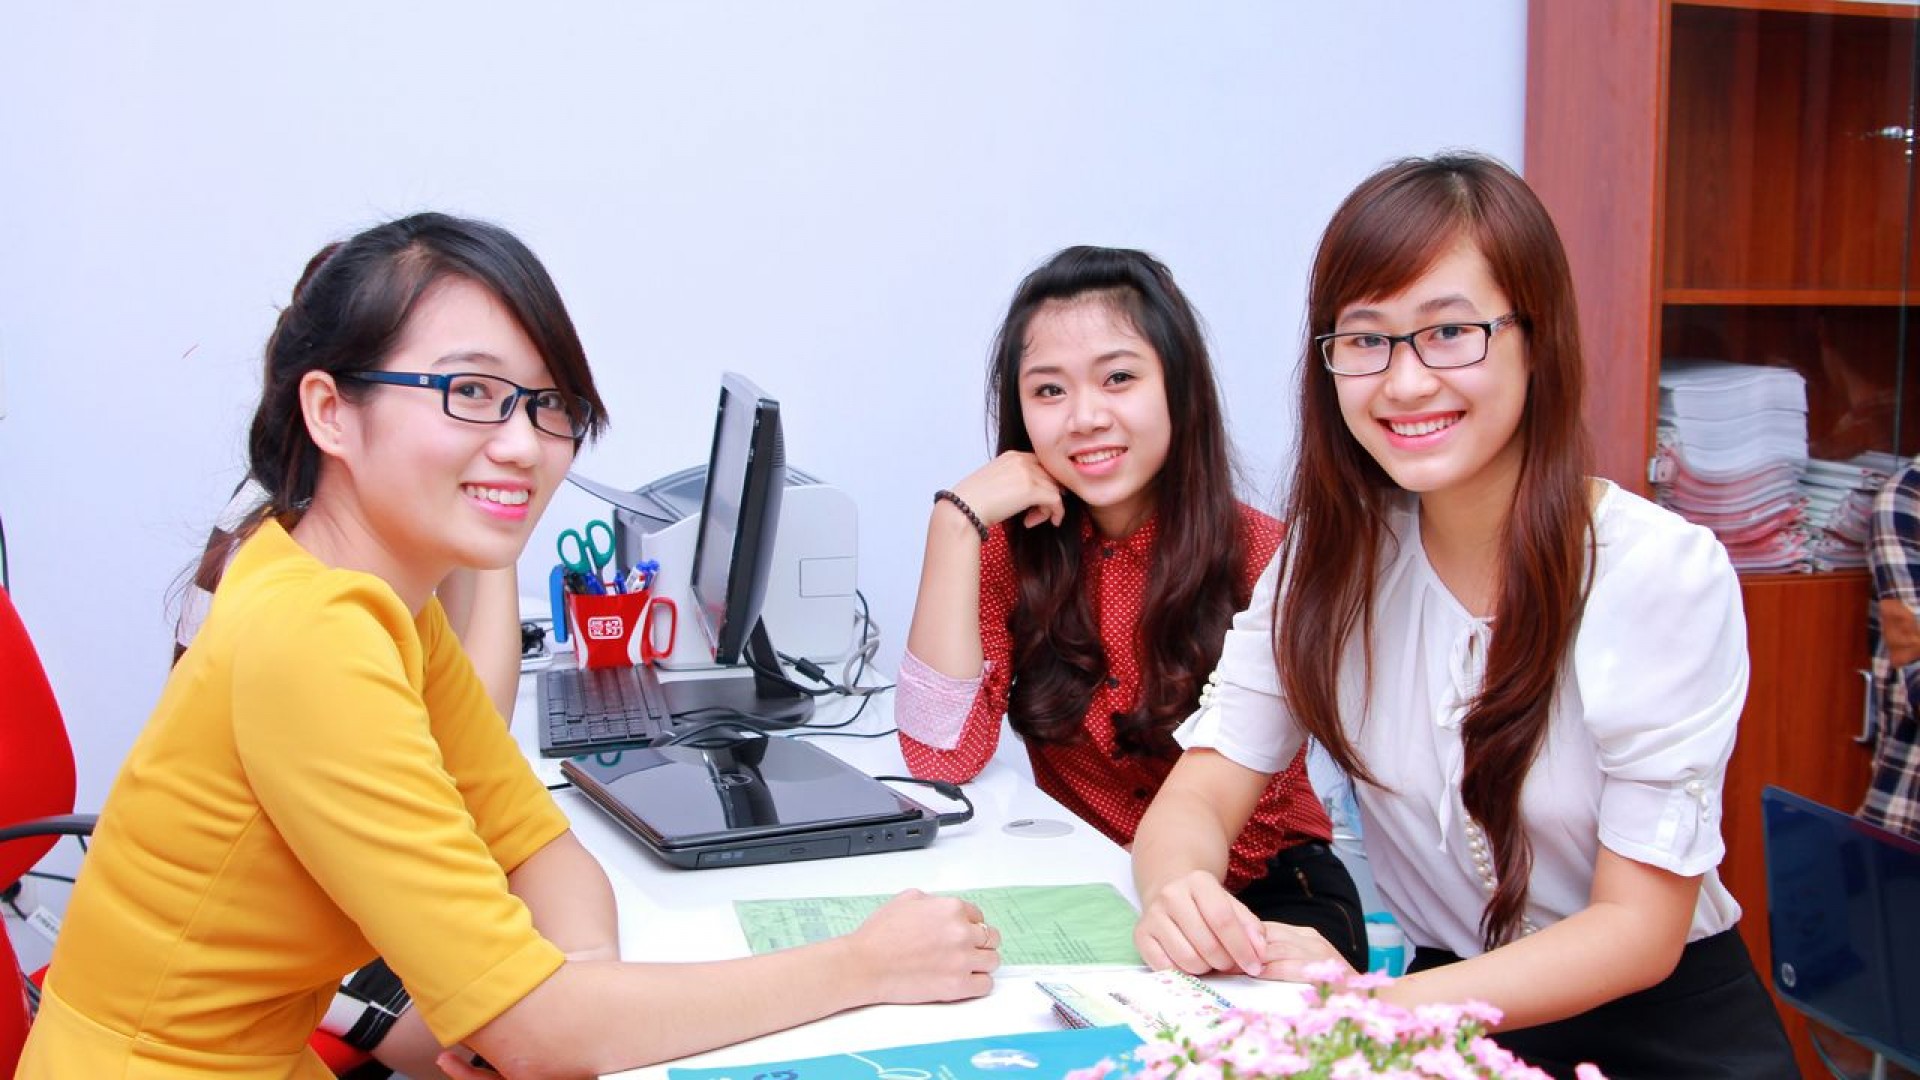 Ghé thăm 3 trung tâm dạy tiếng Anh cho người đi làm tại quận Thanh Xuân